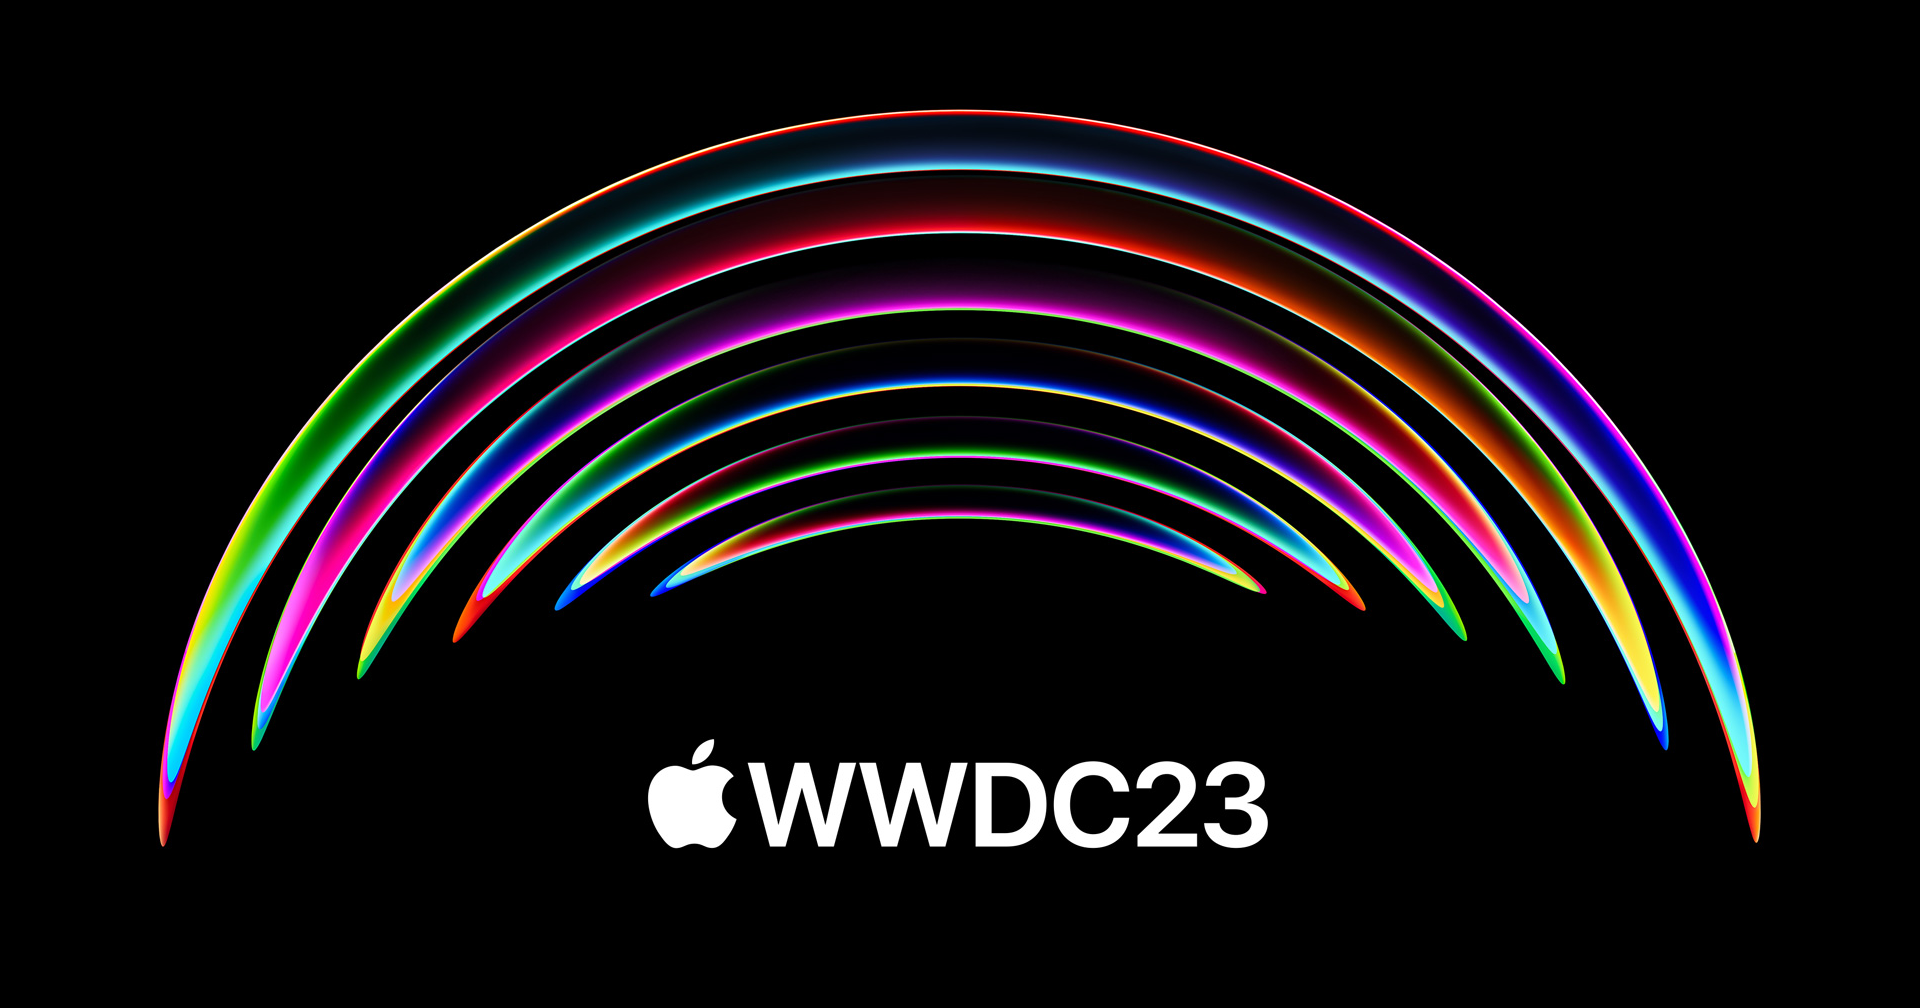 งาน WWDC 2023 ในปีนี้จะเน้นชุดแว่น Mixed Reality และระบบปฏิบัติการ xrOS